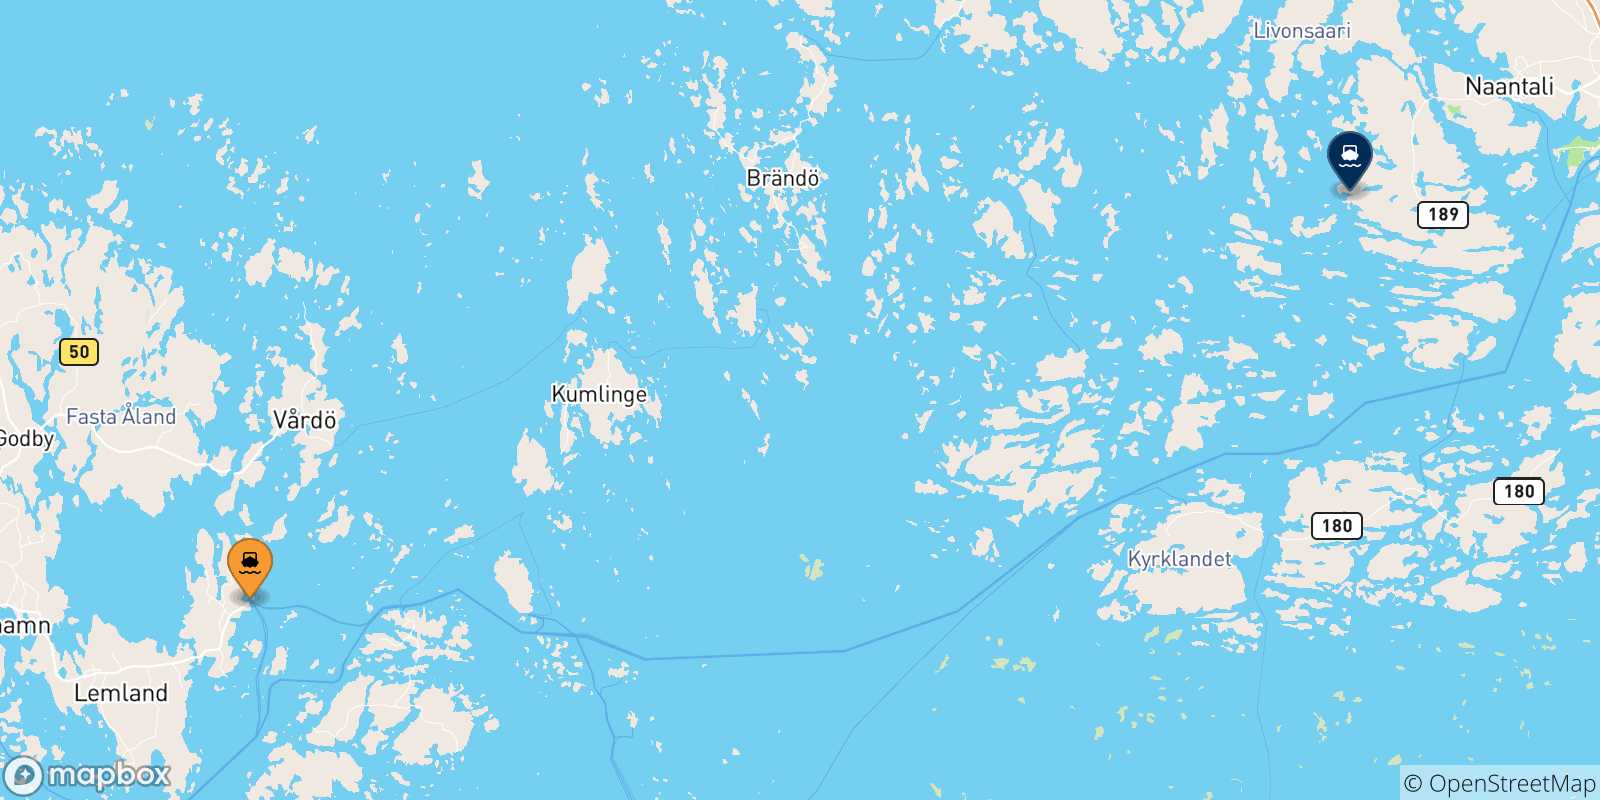 Mapa de las posibles rutas entre Finlandia y  Naantali